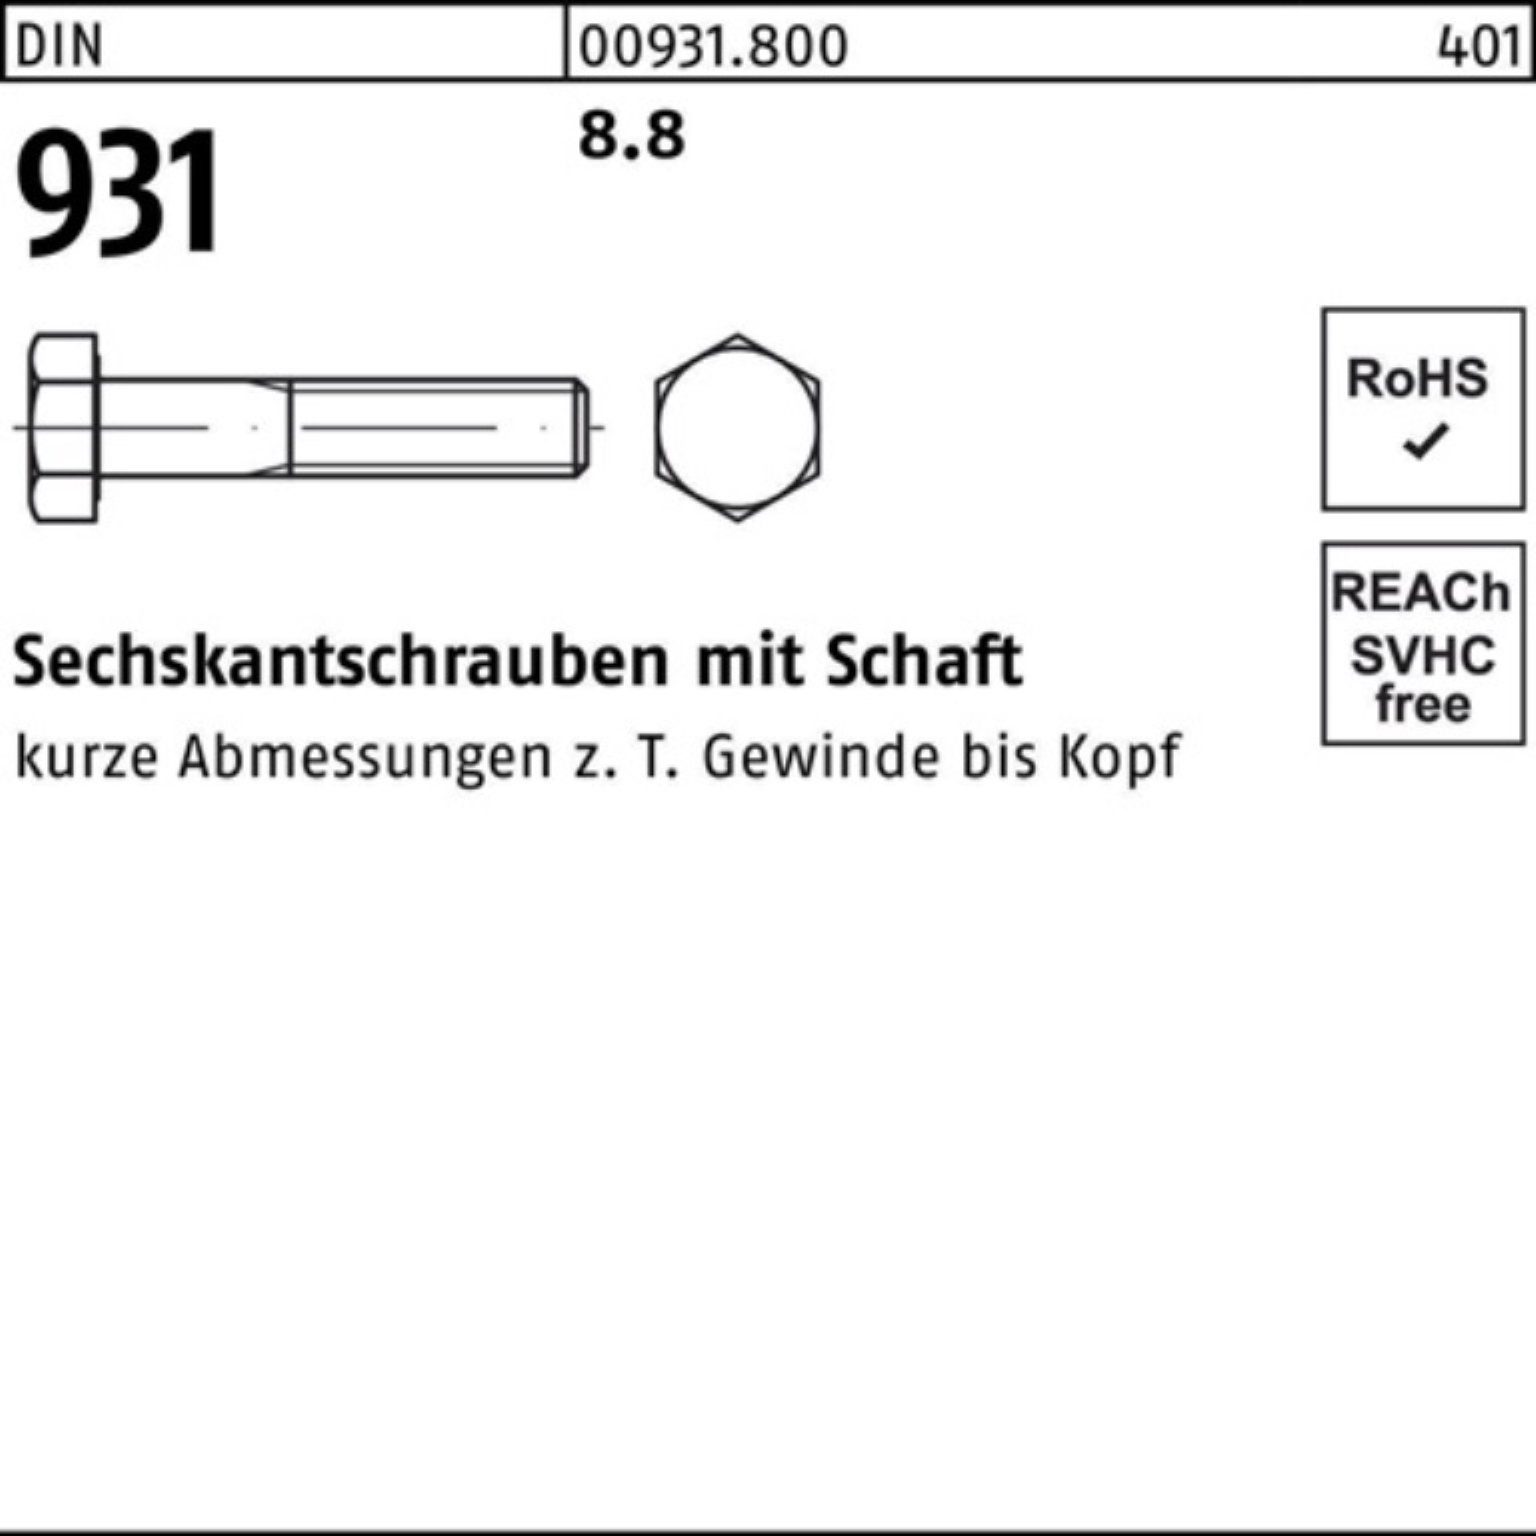 Reyher Sechskantschraube 100er Pack Sechskantschraube DIN M20x 931 Schaft 10 160 DIN 8.8 Stück